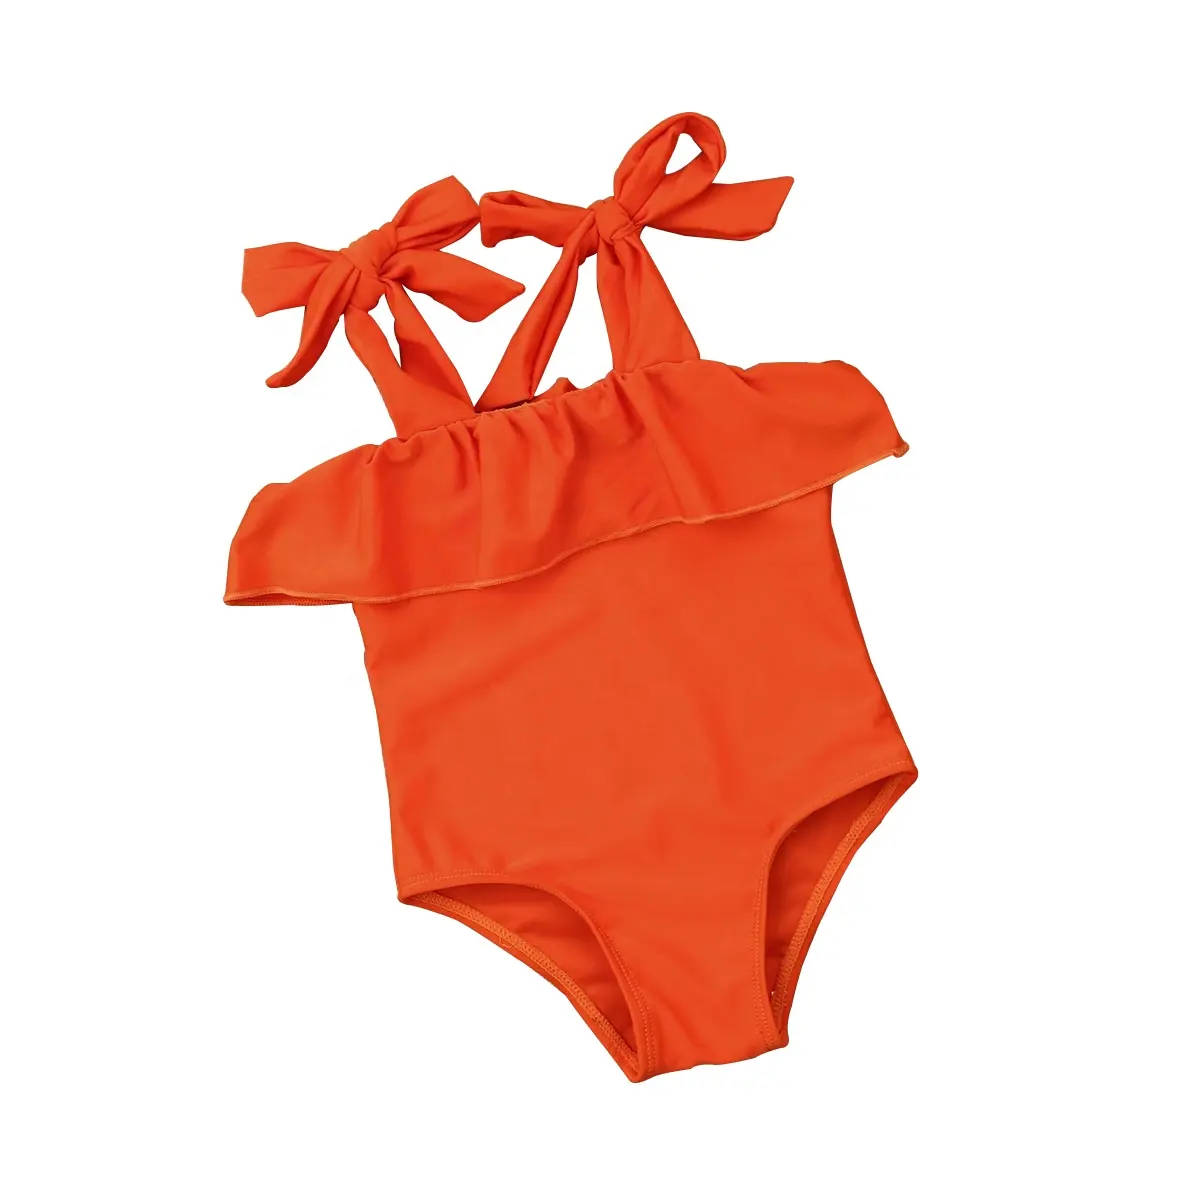 جديد الطفل طفل ملابس سباحة للفتيات الصيف الكشكشة واحدة قطعة بيكيني ملابس السباحة شاطئ الاستحمام بدلة طفل فتاة ملابس السباحة 0-12T